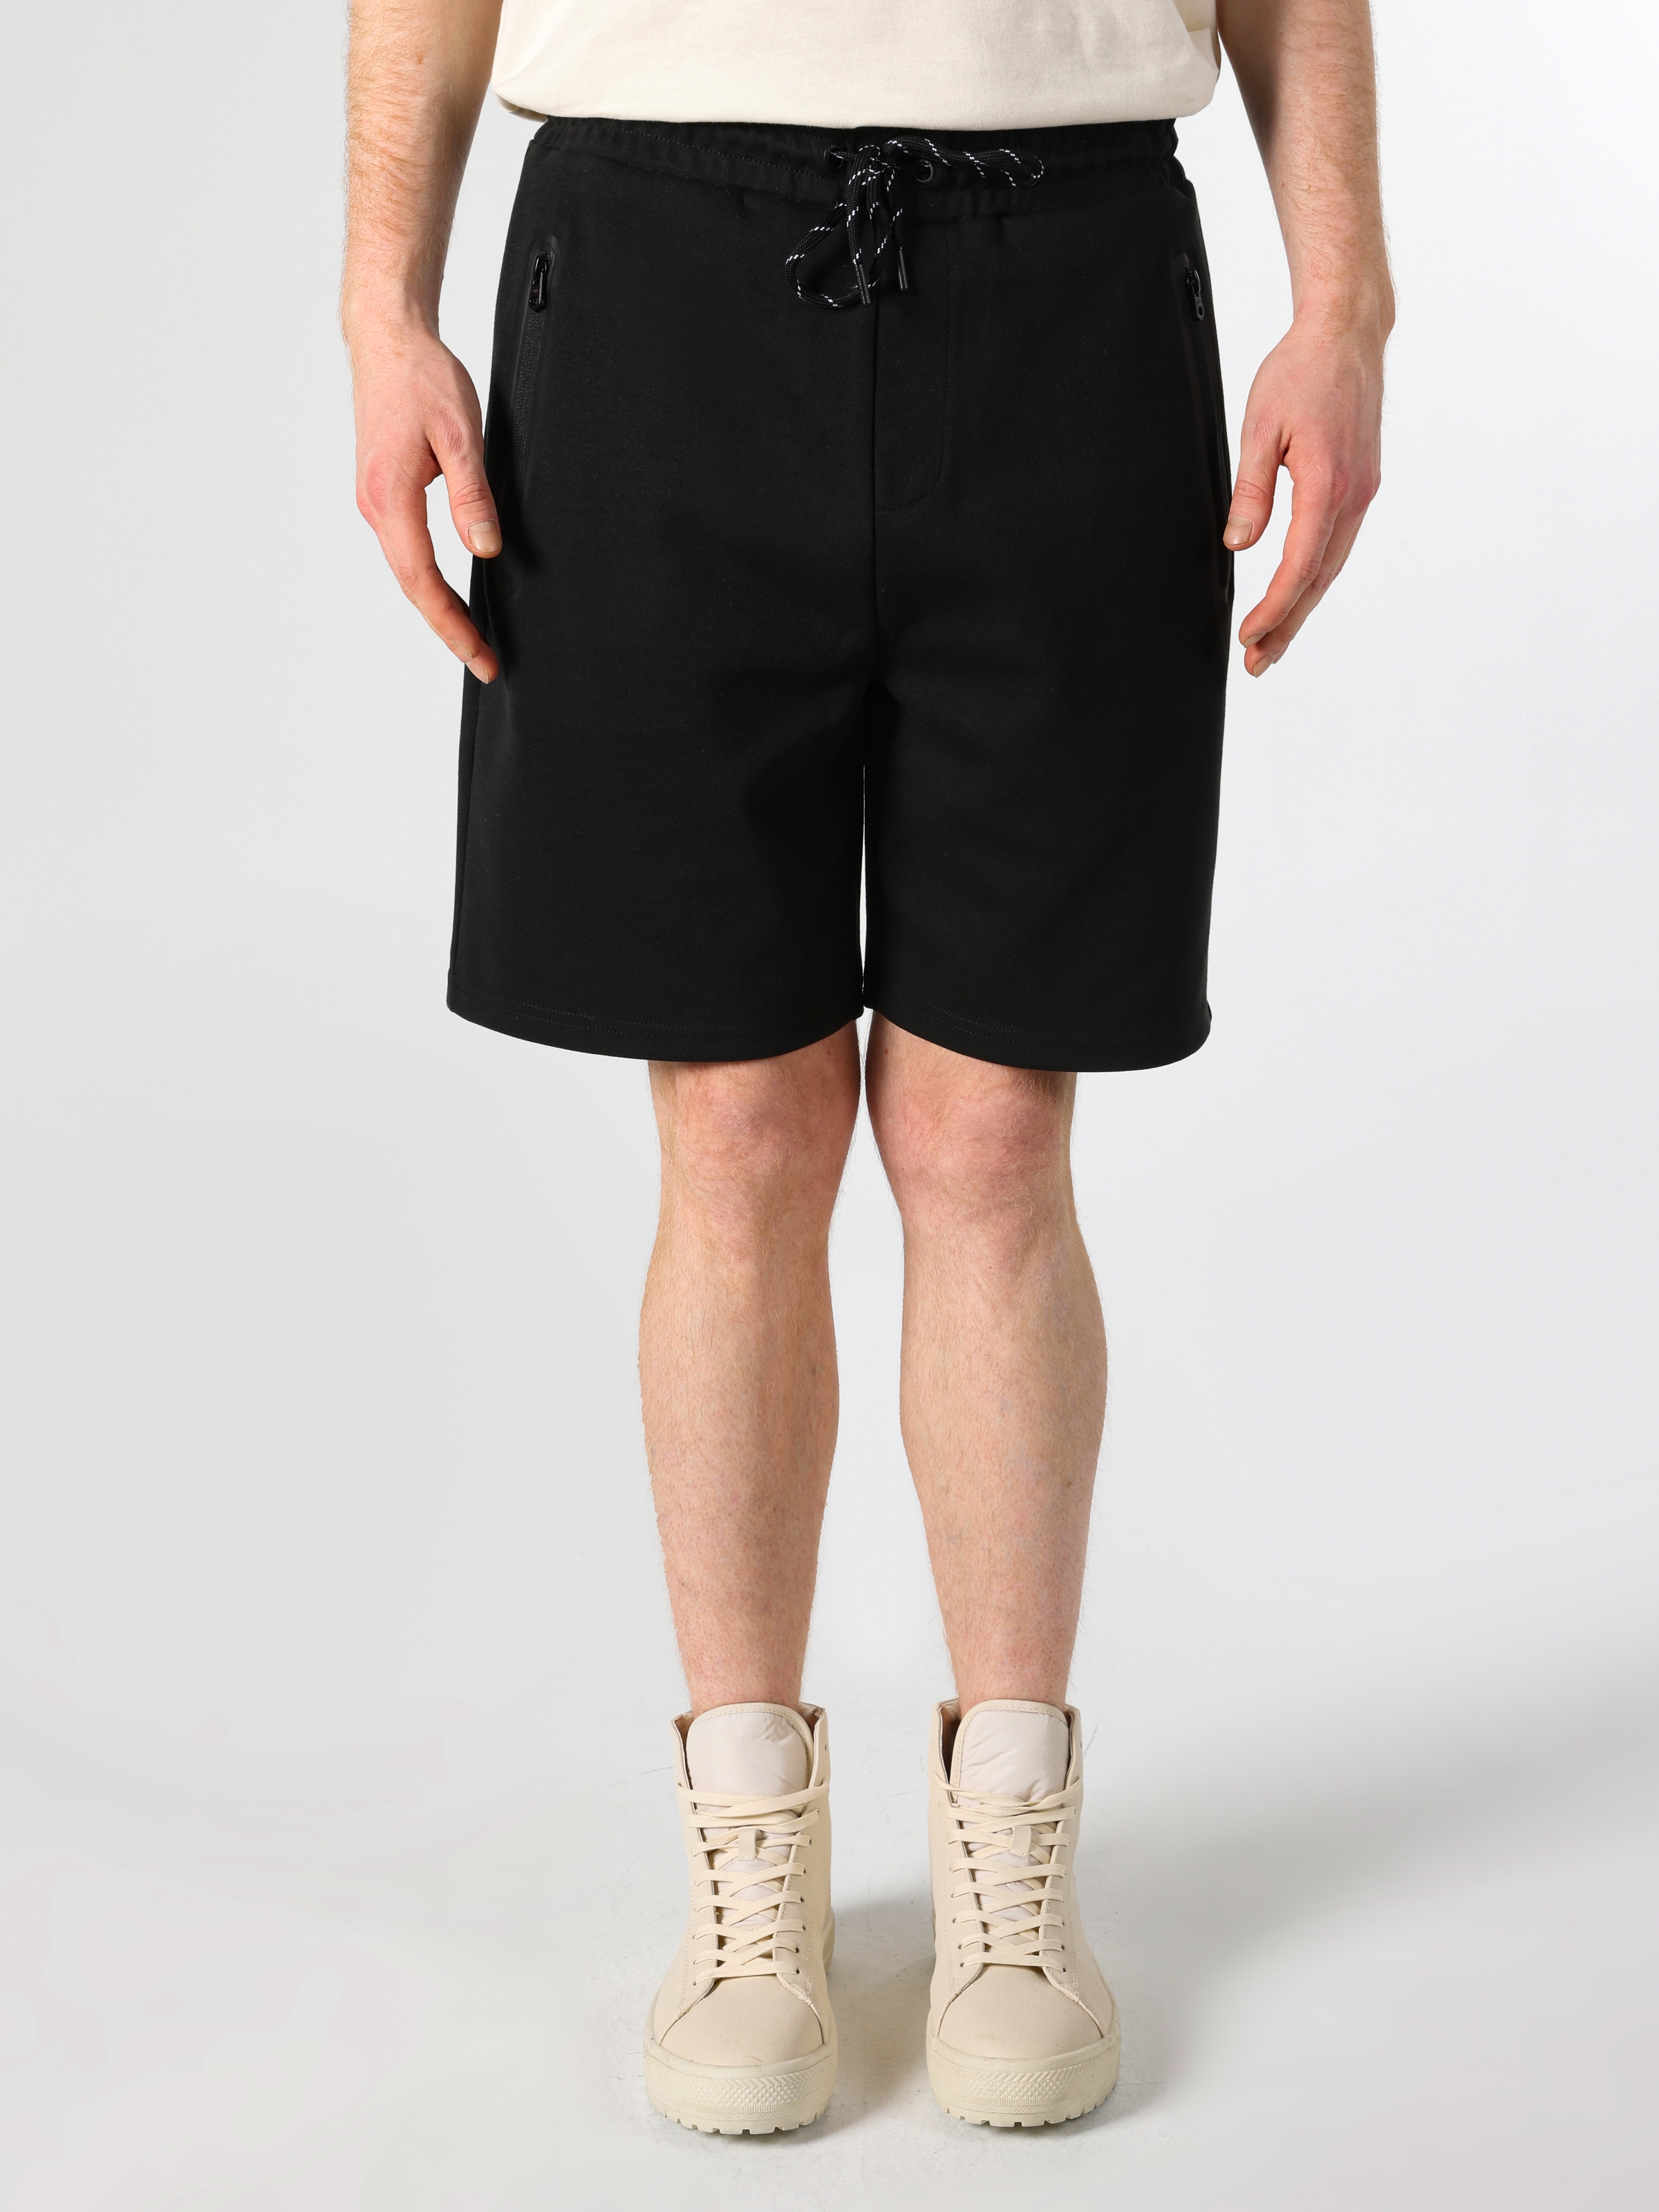 Afișați detalii pentru Short / Pantaloni Scurti De Barbati Negru Slim Fit  CL1062787